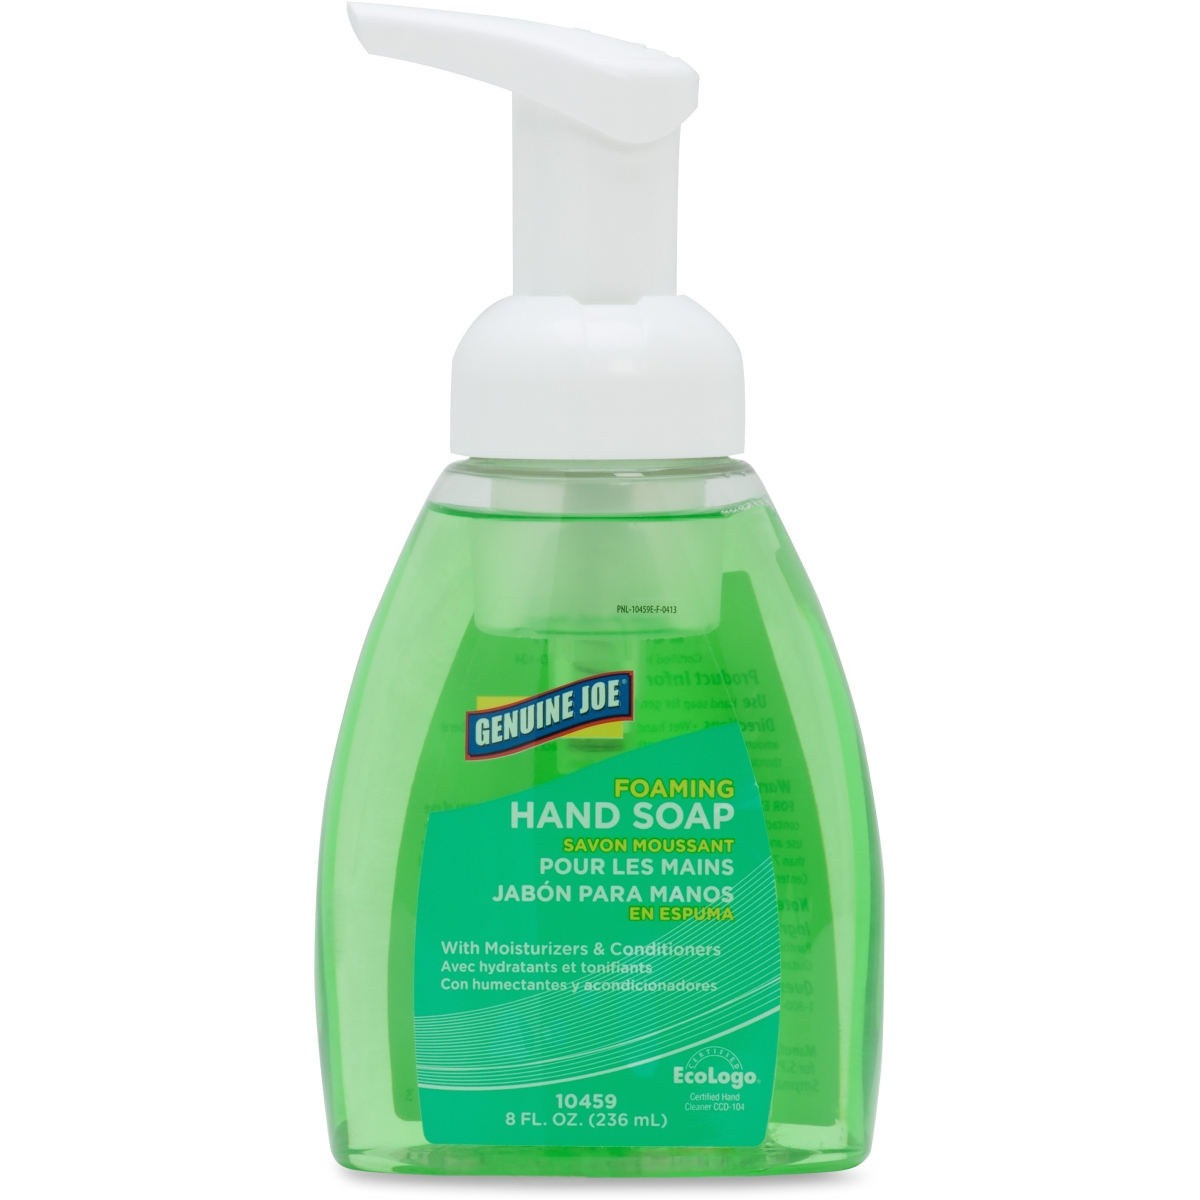 Gjo10459ct 8 Oz Foaming Hand Soap - Green